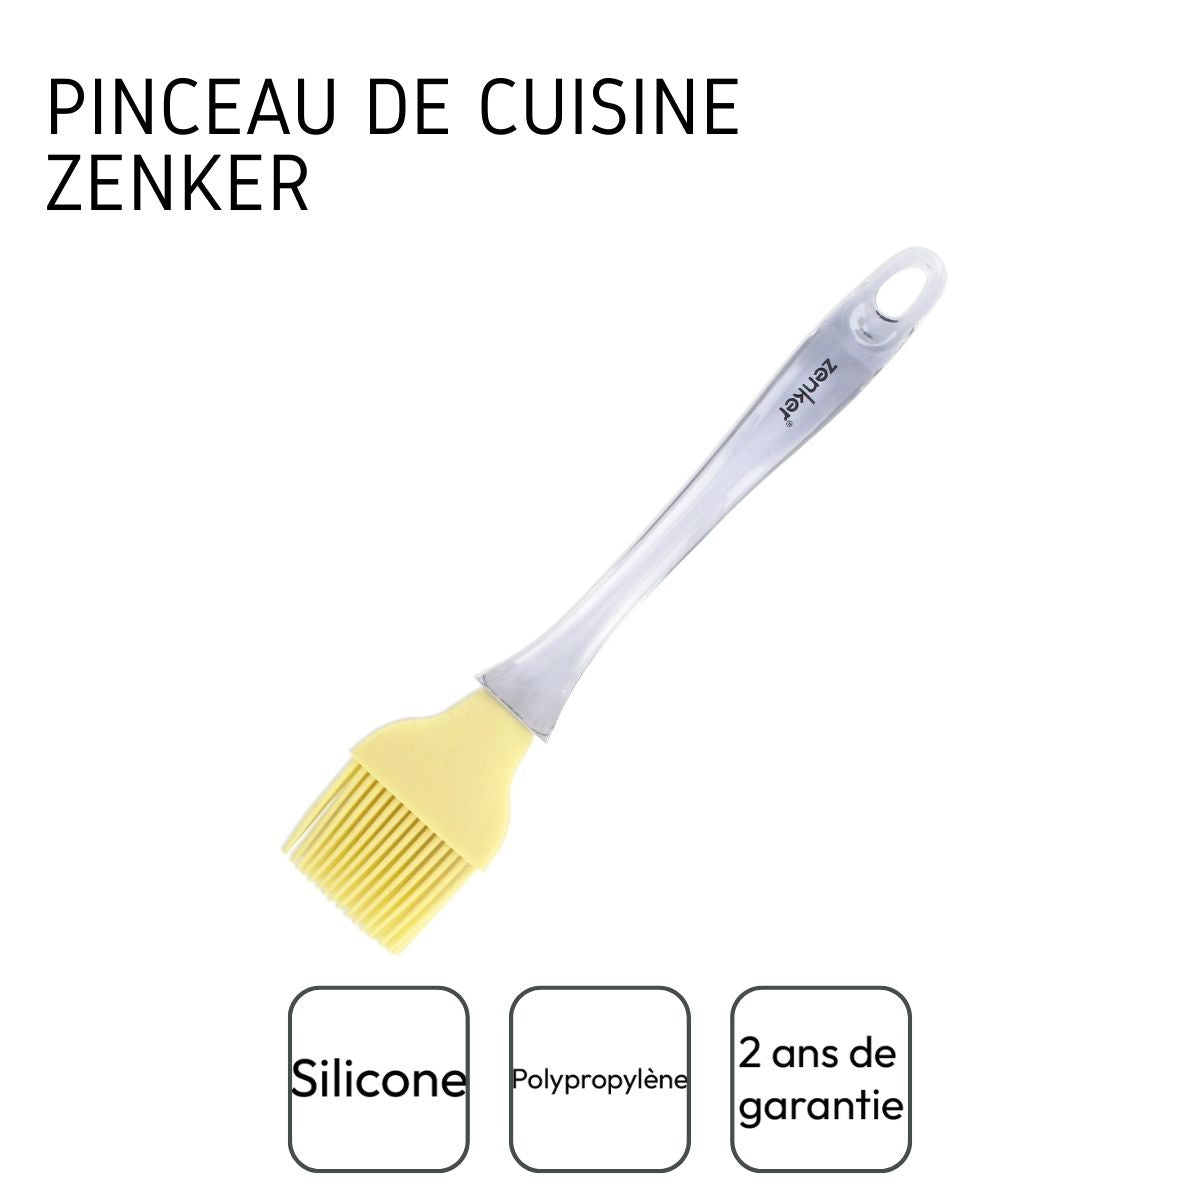 Pinceau de cuisine en silicone 24 cm Zenker